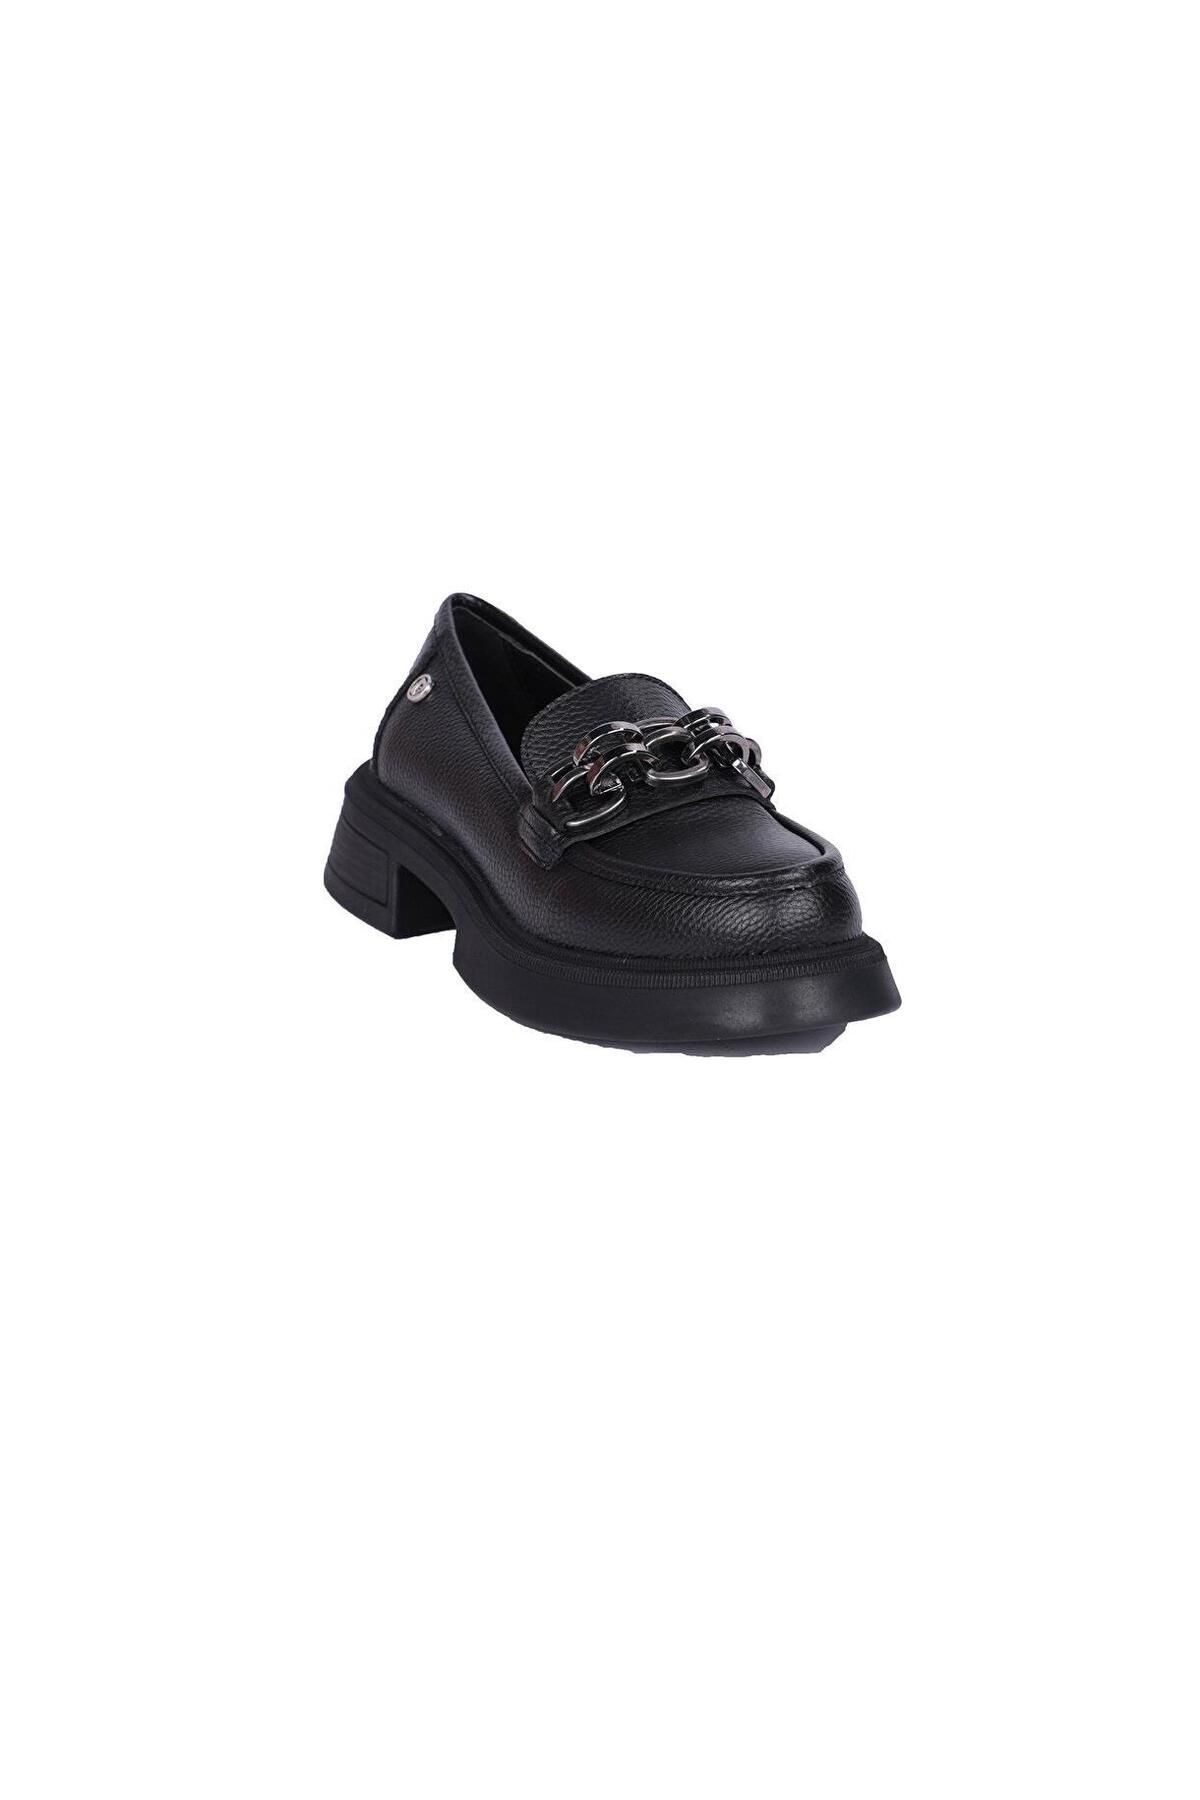 Pierre Cardin PC-52651 Siyah Kadın Günlük Ayakkabı